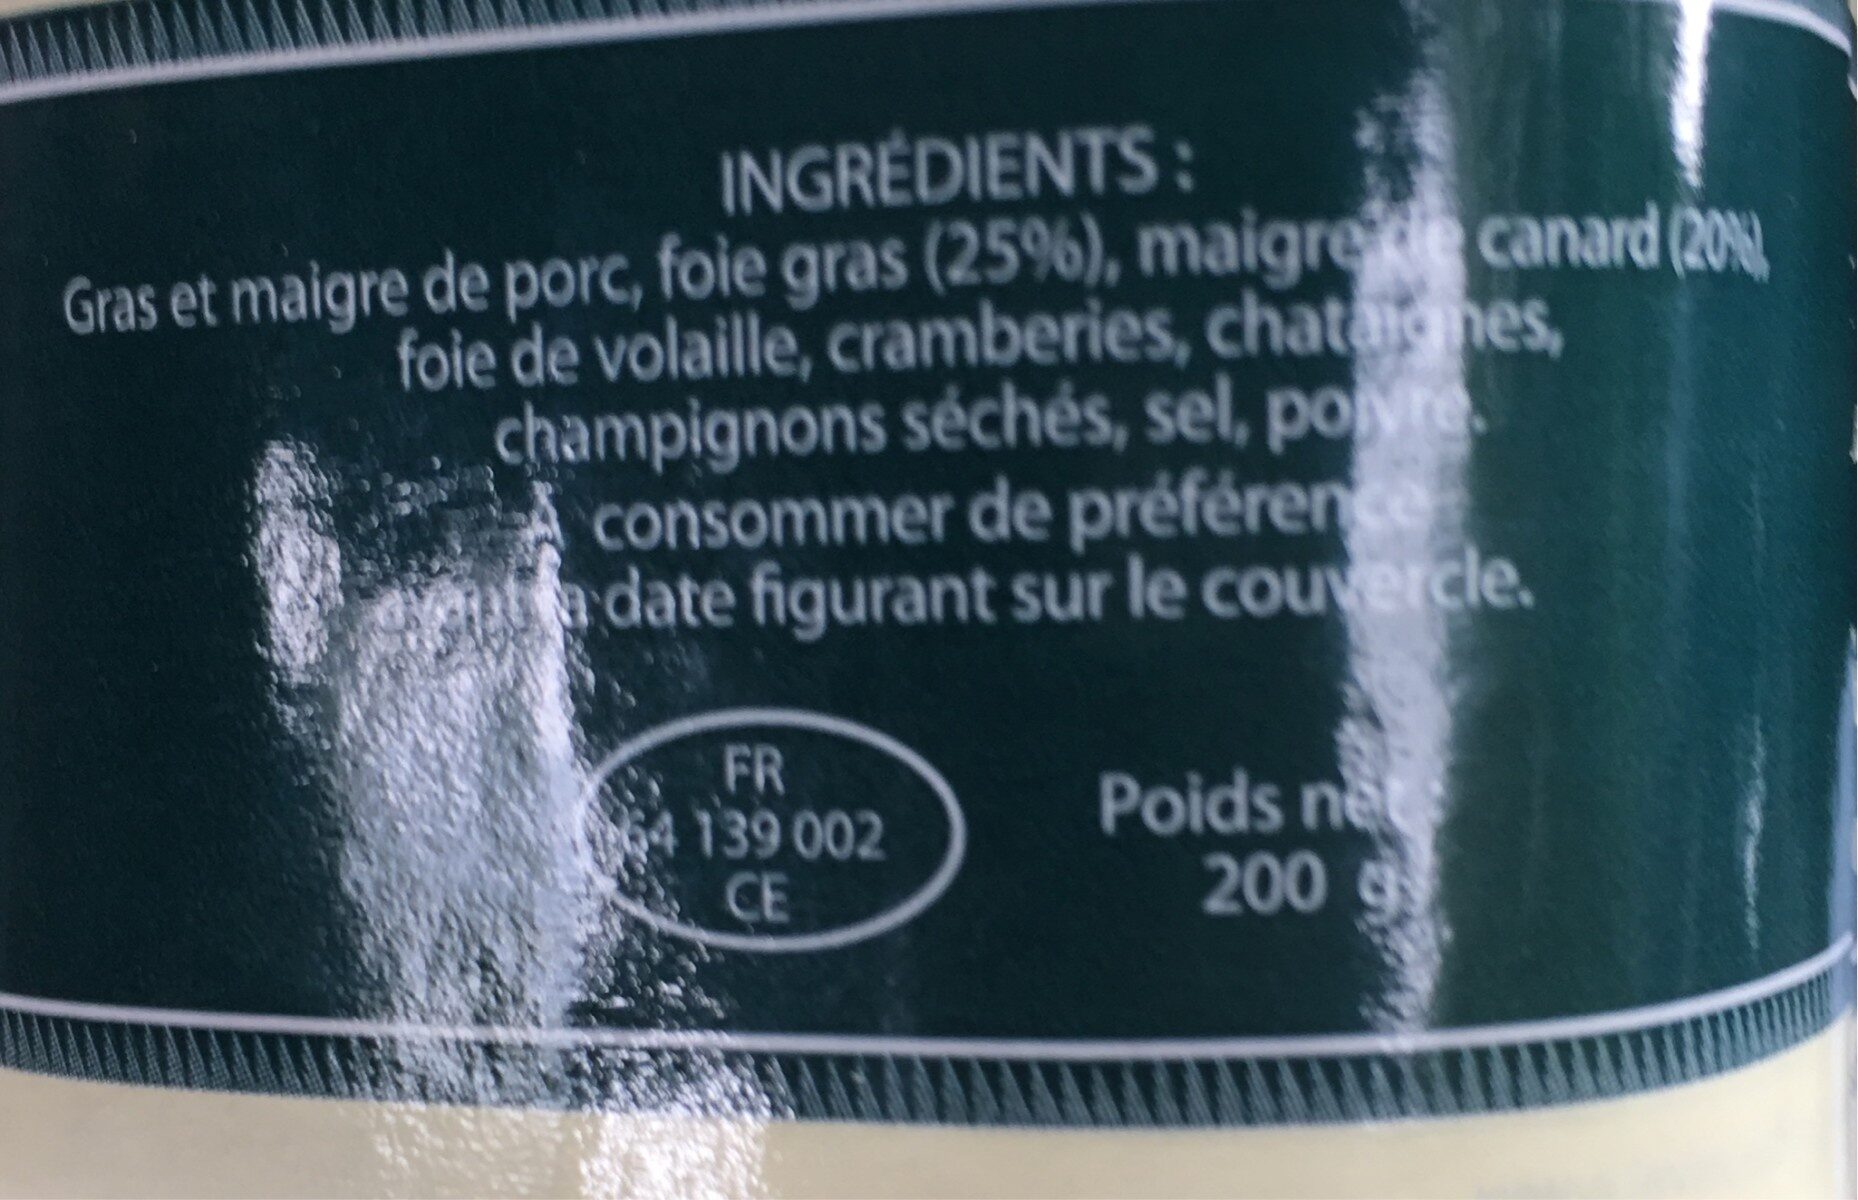 Mille feuilles au magret et au foie gras entier 25% - Ingredients - fr